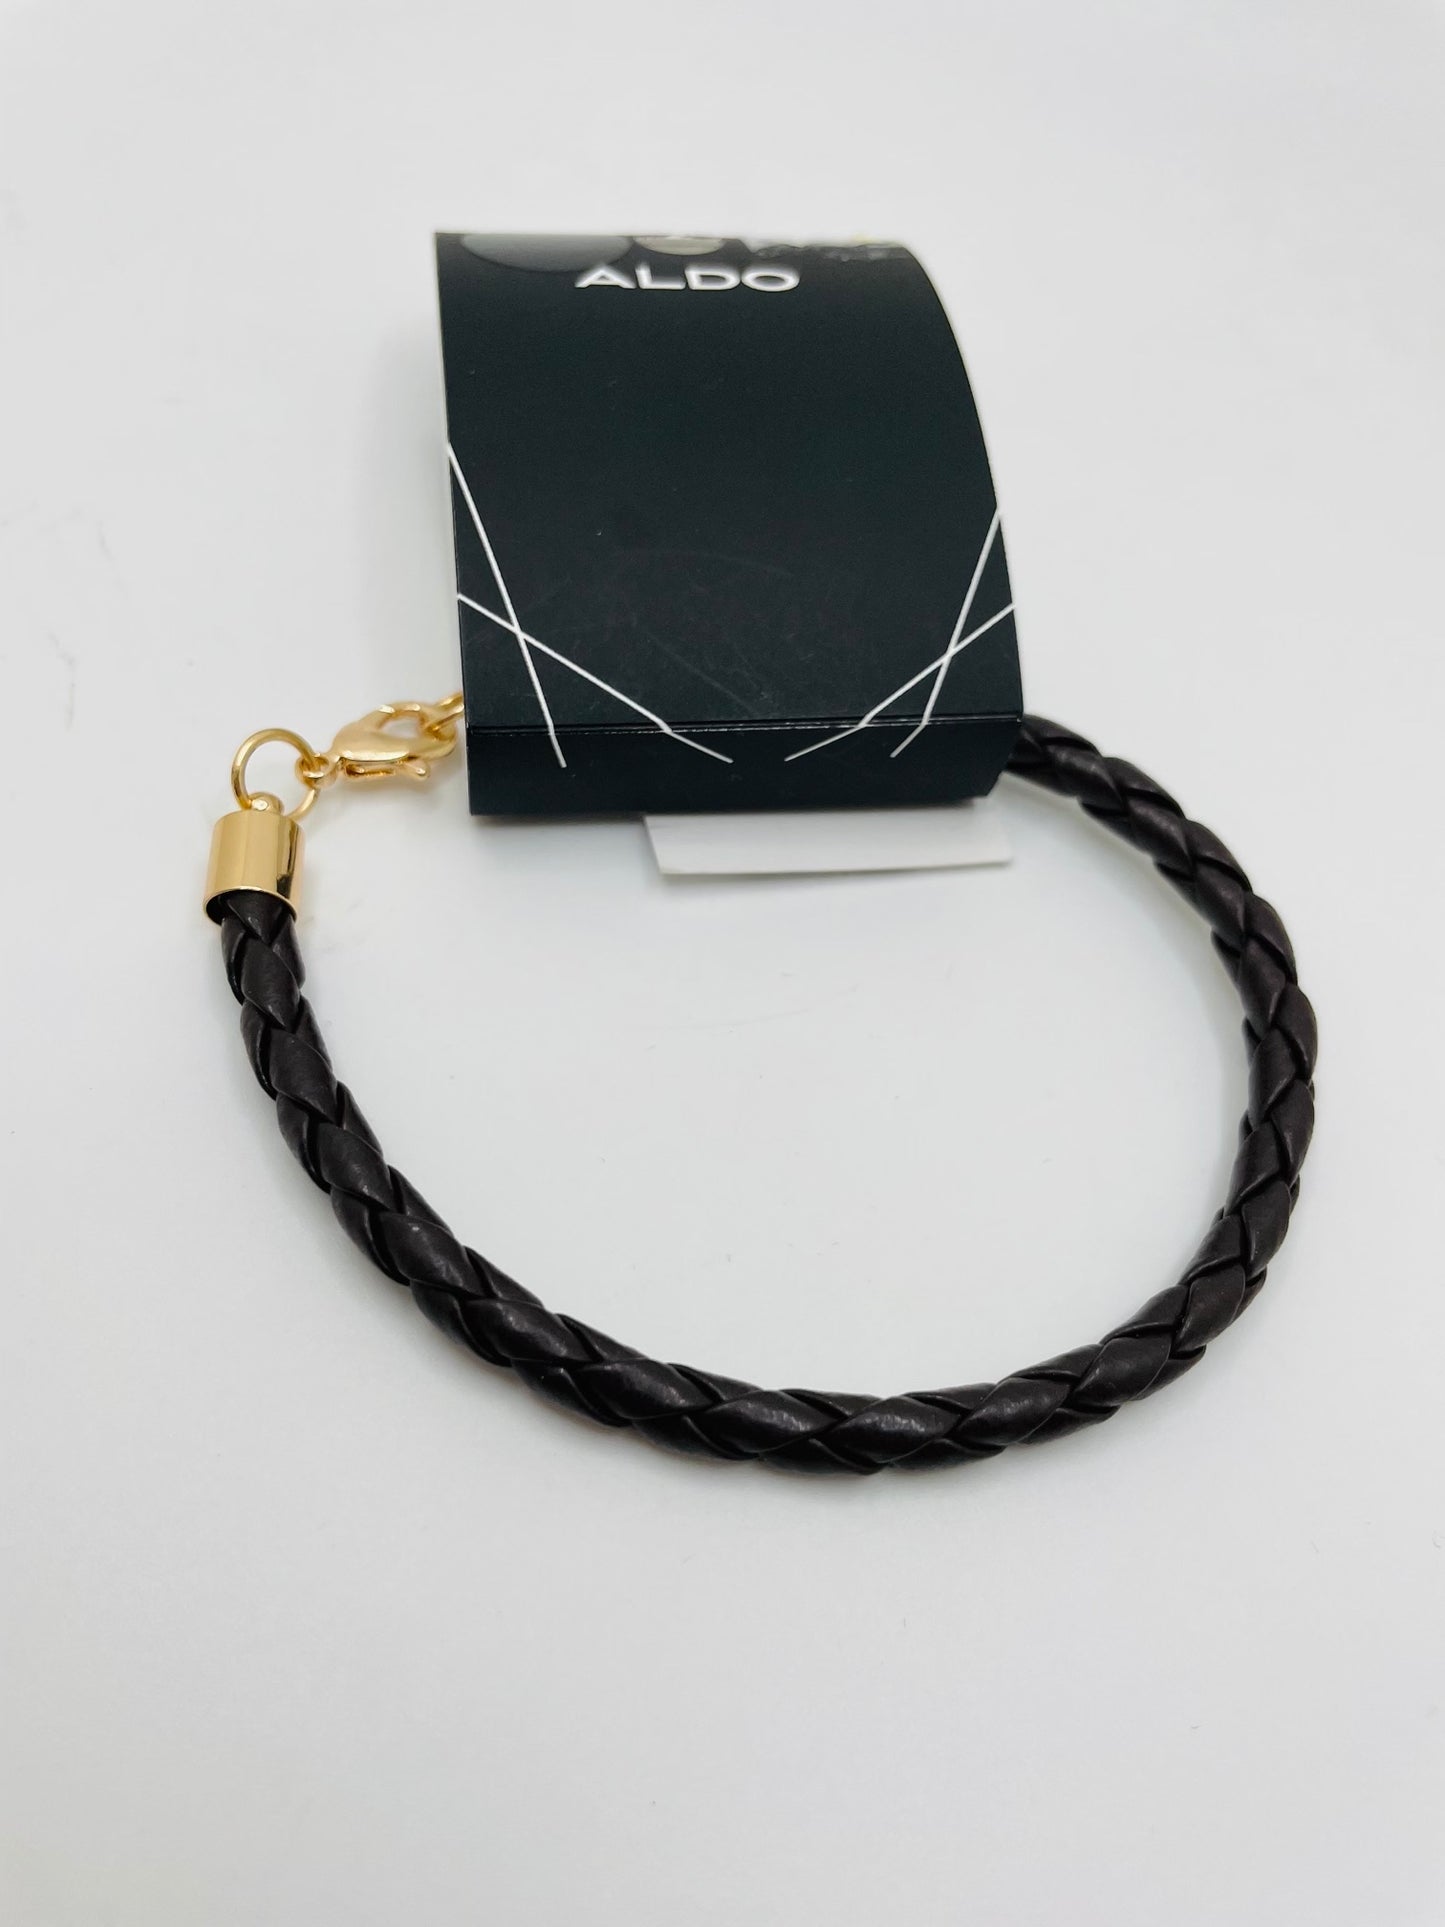 Aldo bracelet